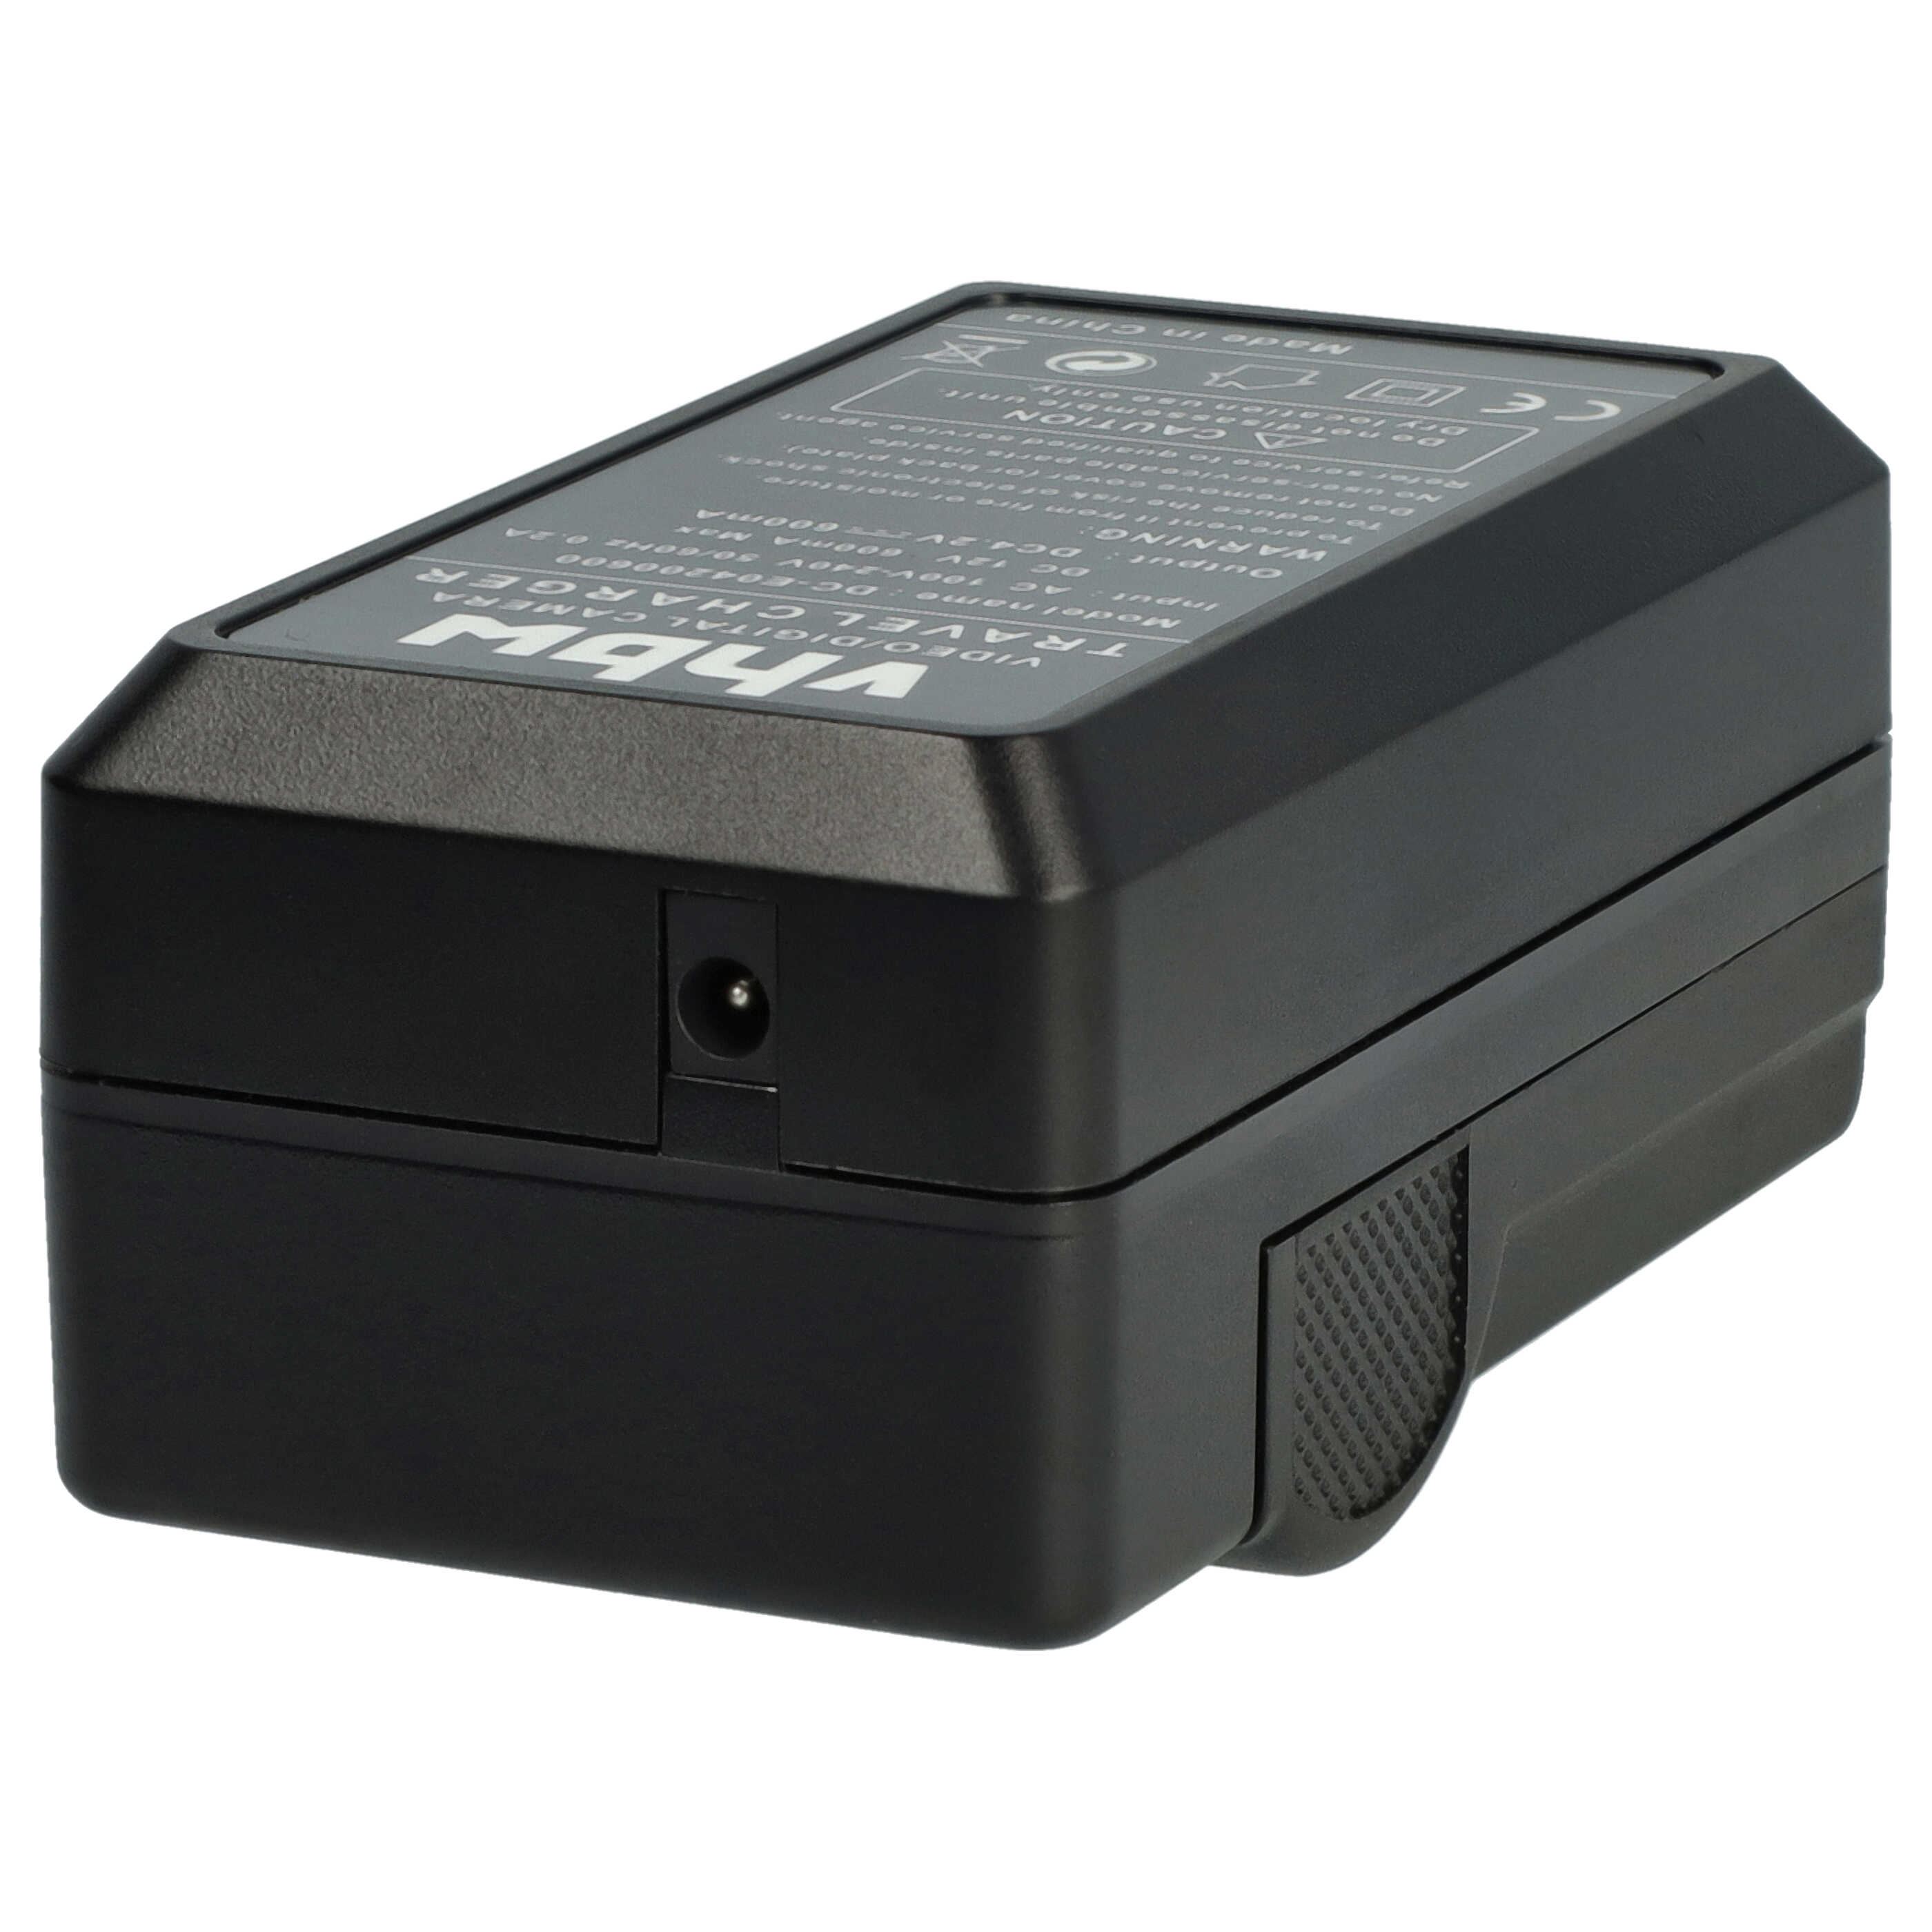 Akku Ladegerät passend für Silvercrest Digitalkamera und weitere - 0,6 A, 4,2 V